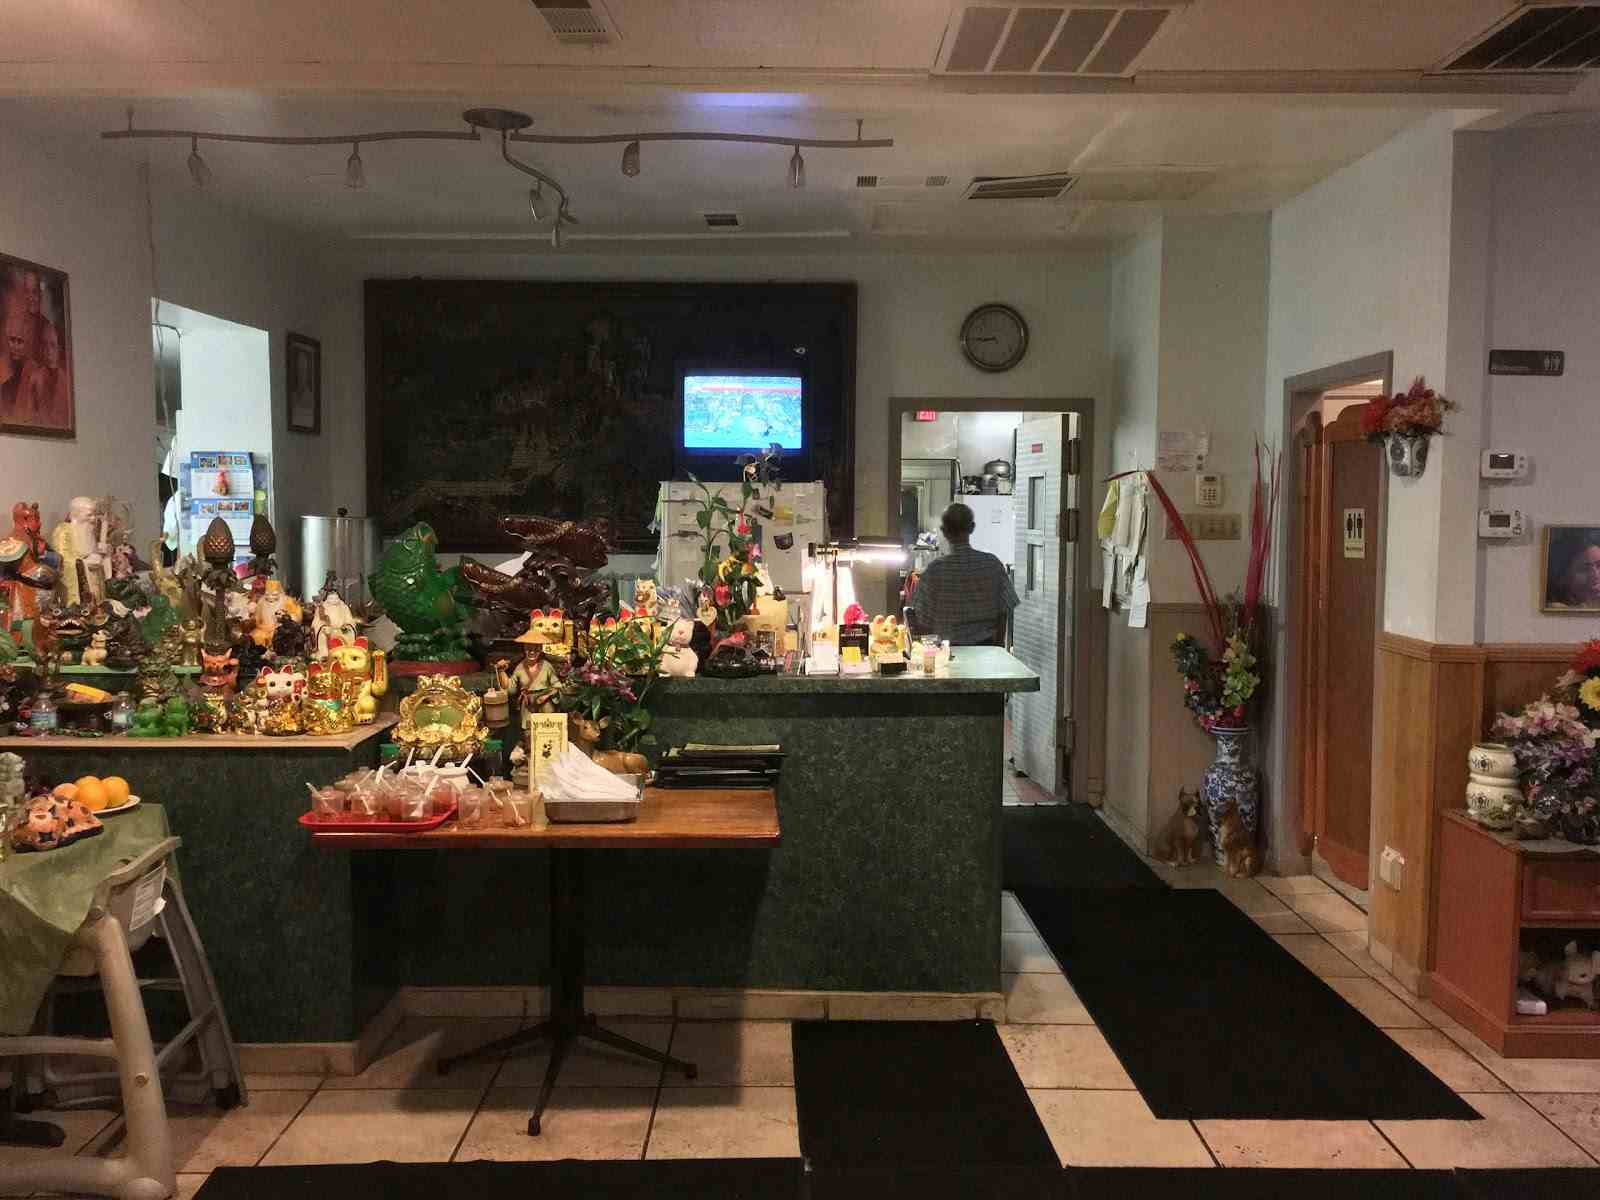 Bangkok Garden Pensacola Restaurant Review Zagat